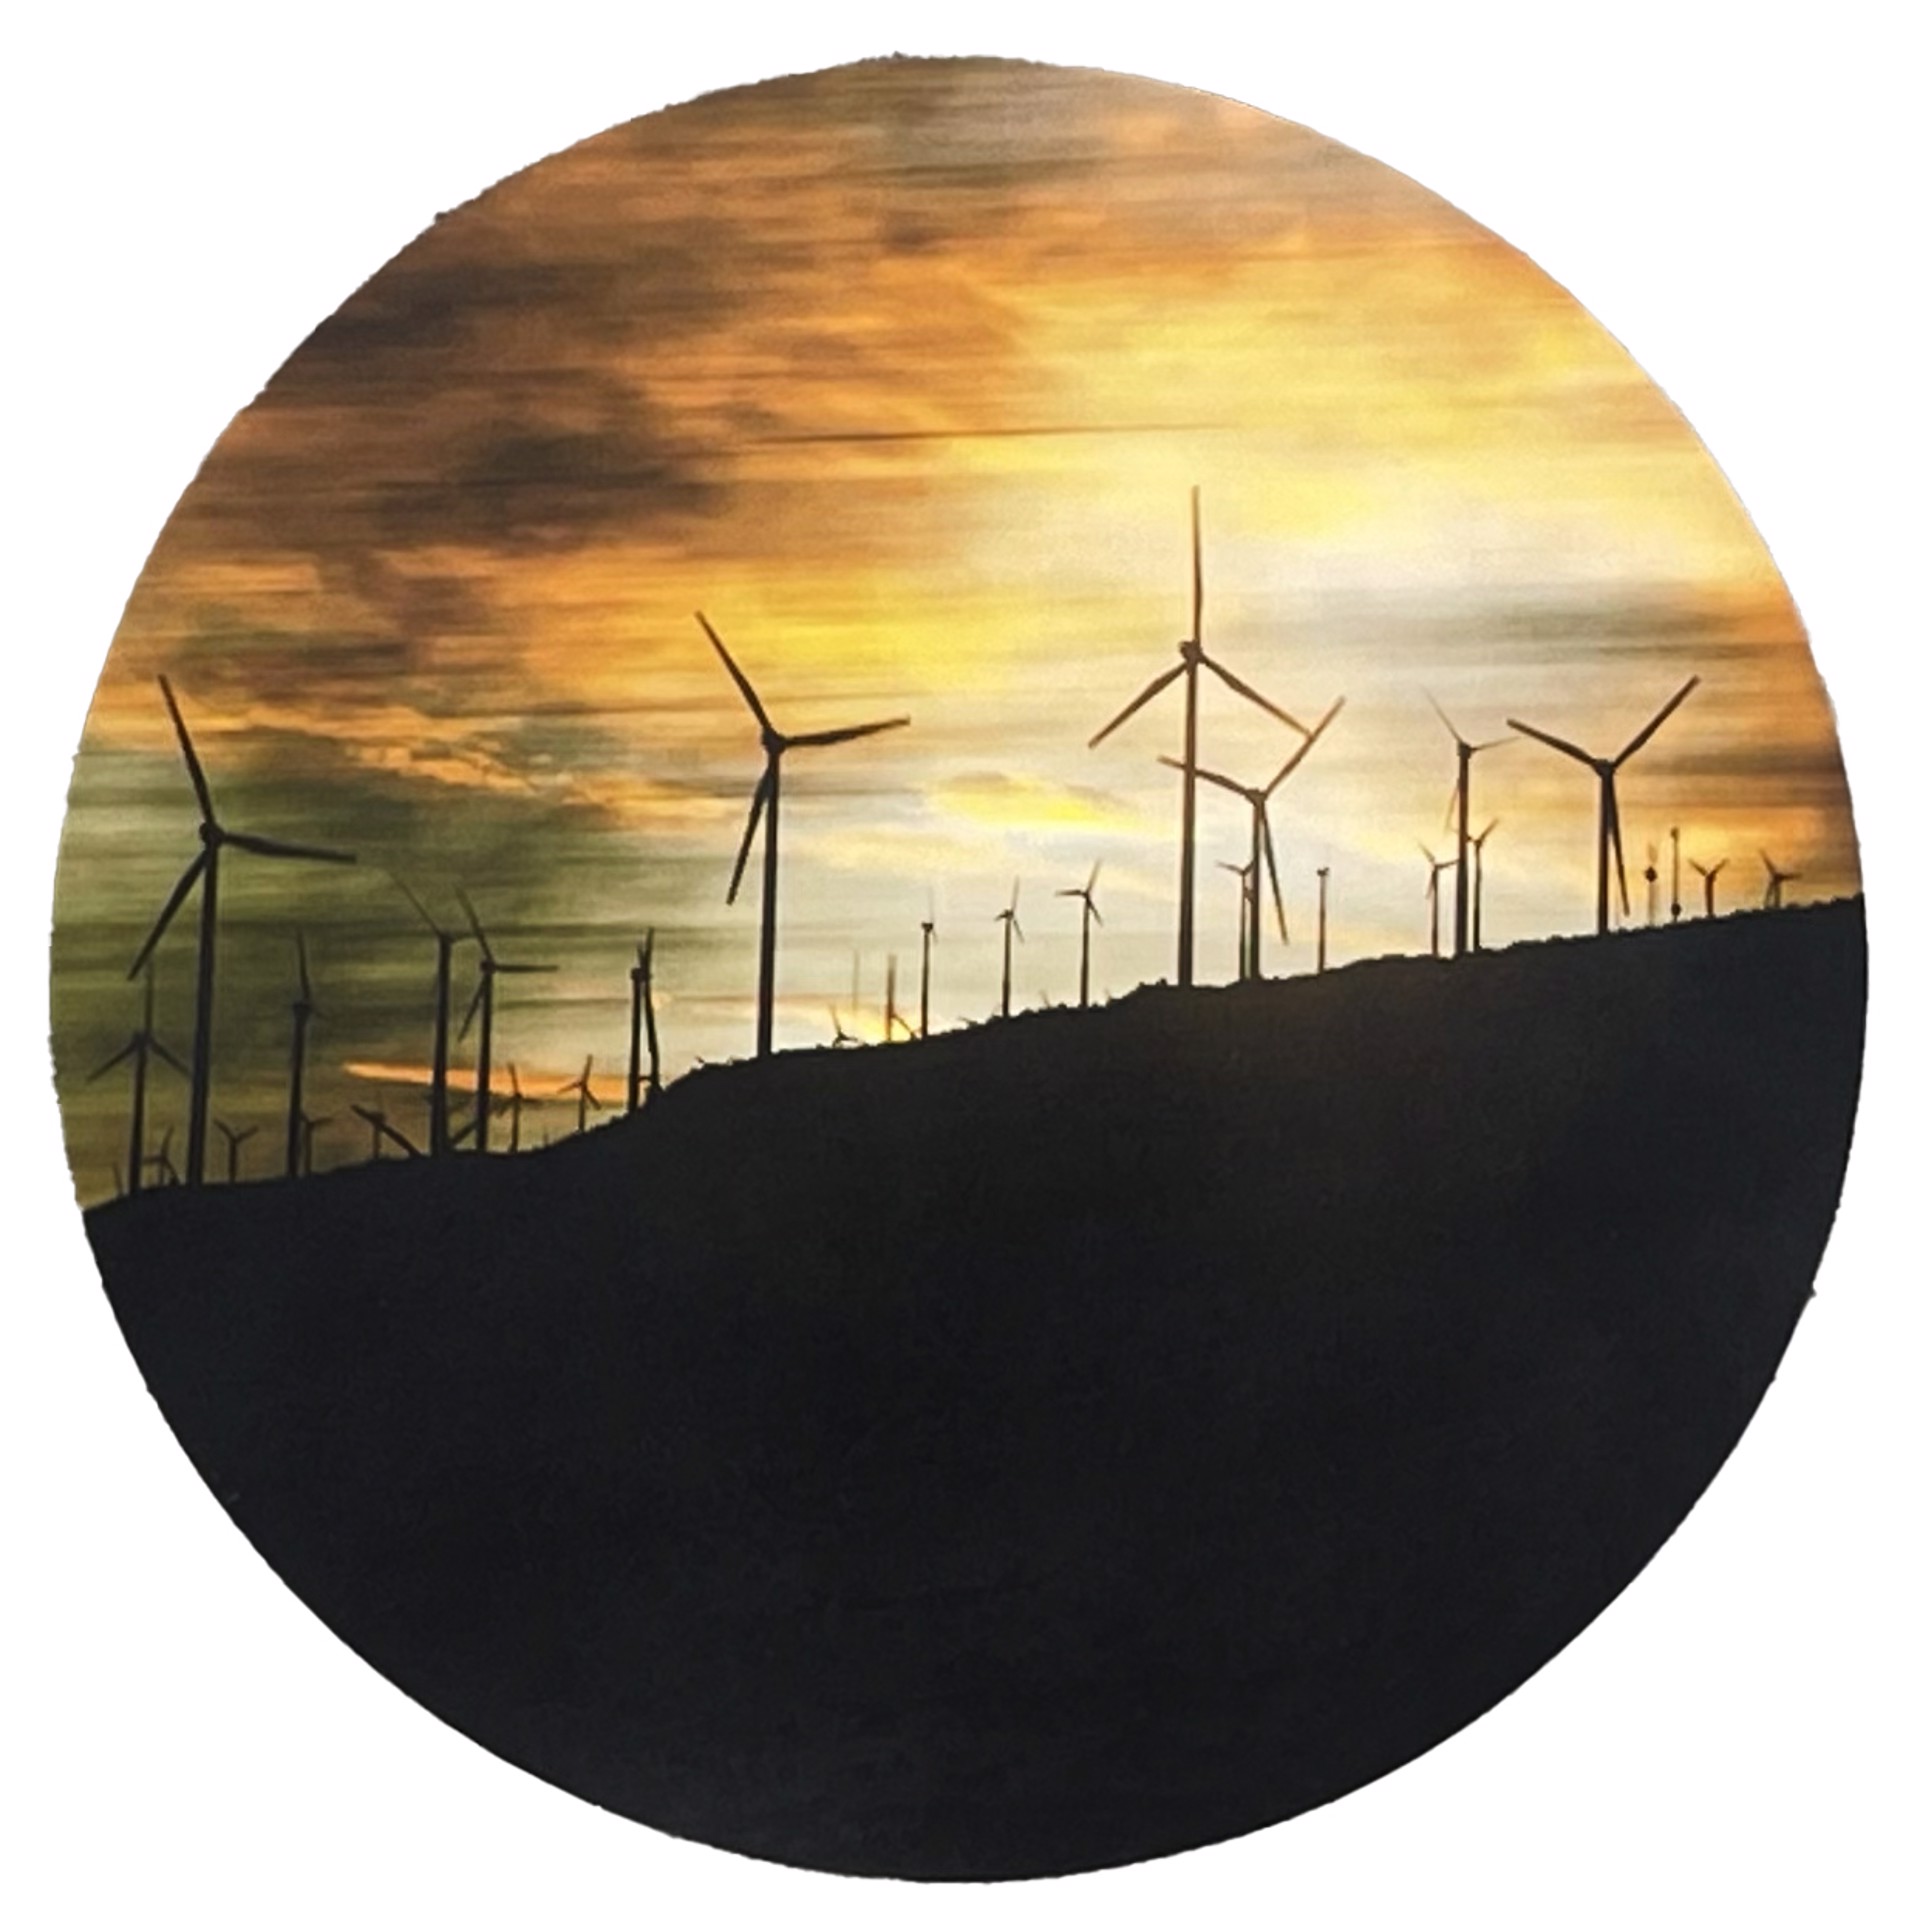 Wind Farm by Sarah Wilson